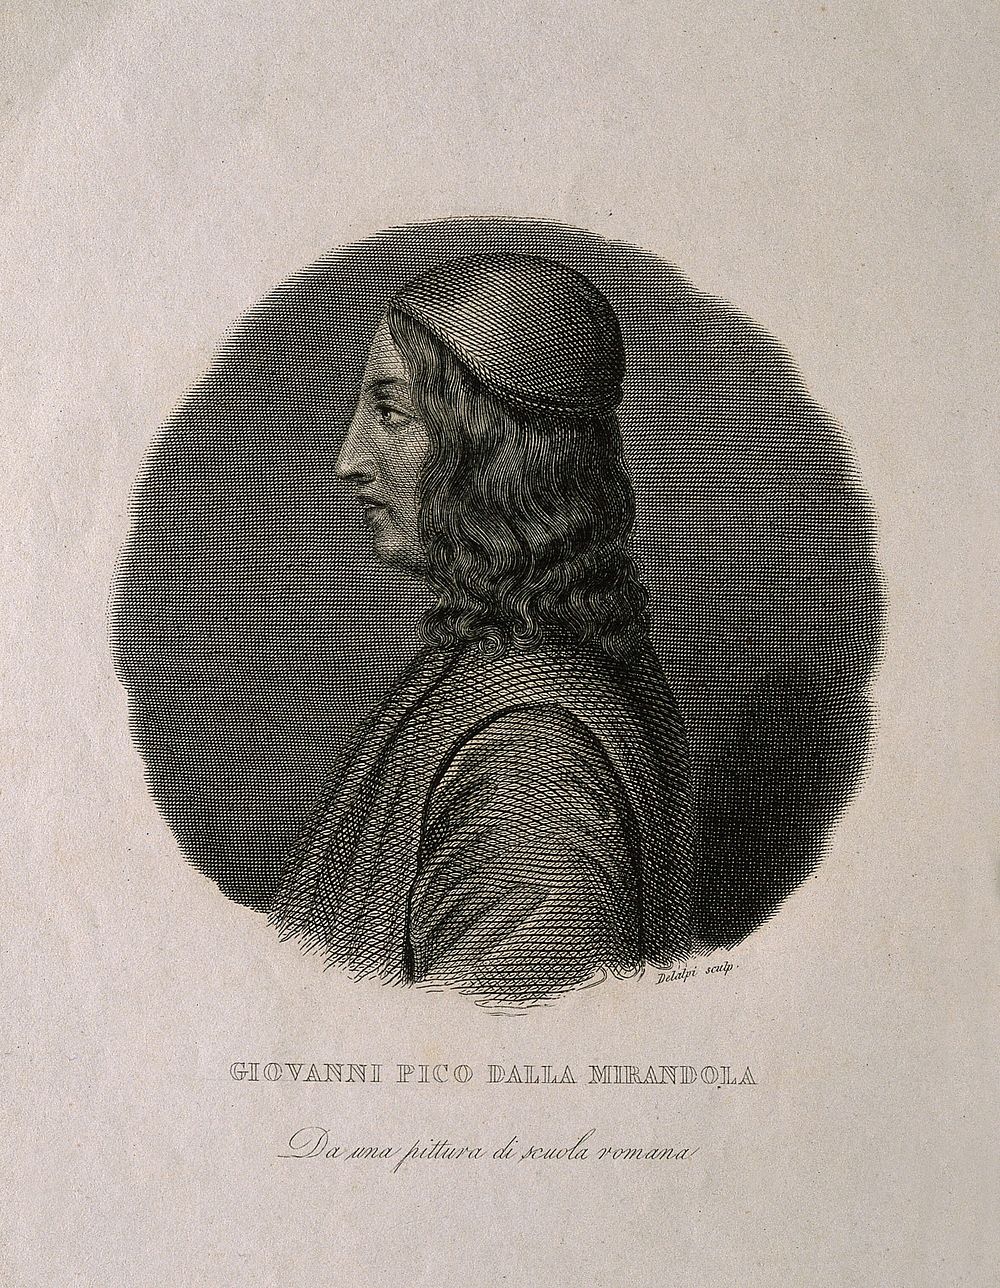 Giovanni Pico della Mirandola [Johannes Picus Mirandulanus]. Line engraving by Delalpi.